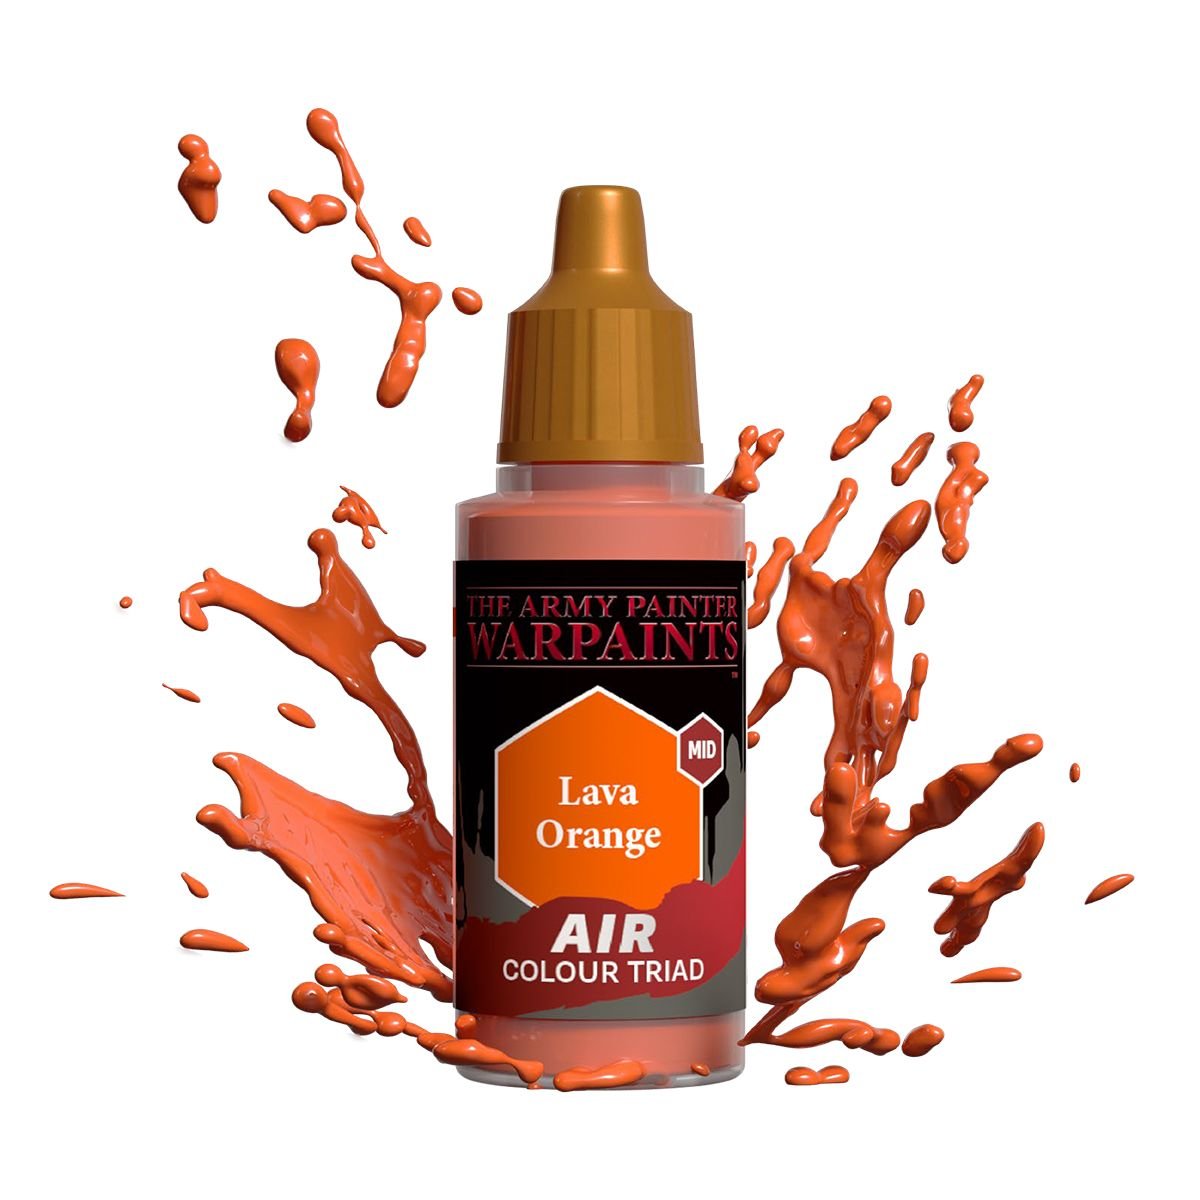 The Army Painter - Warpaints Air: Lava Orange (18ml/0.6oz)